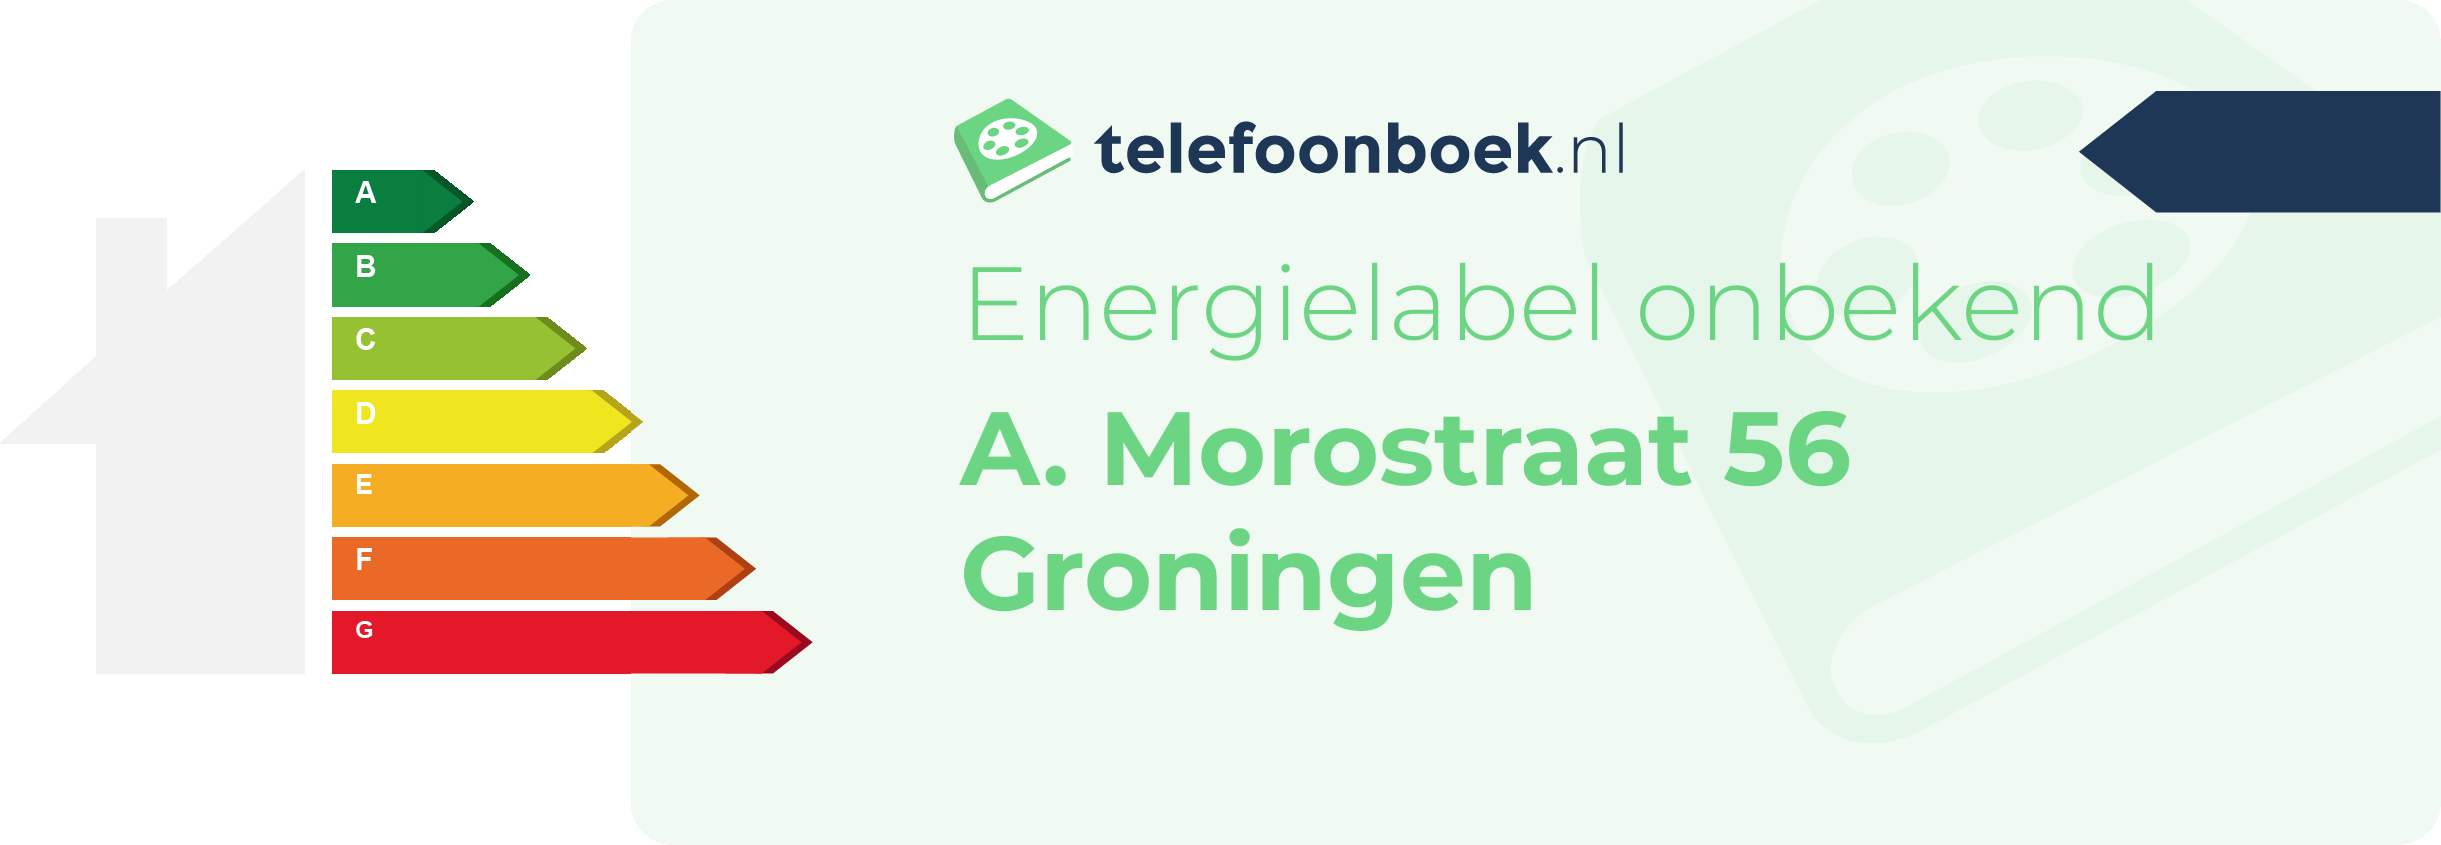 Energielabel A. Morostraat 56 Groningen